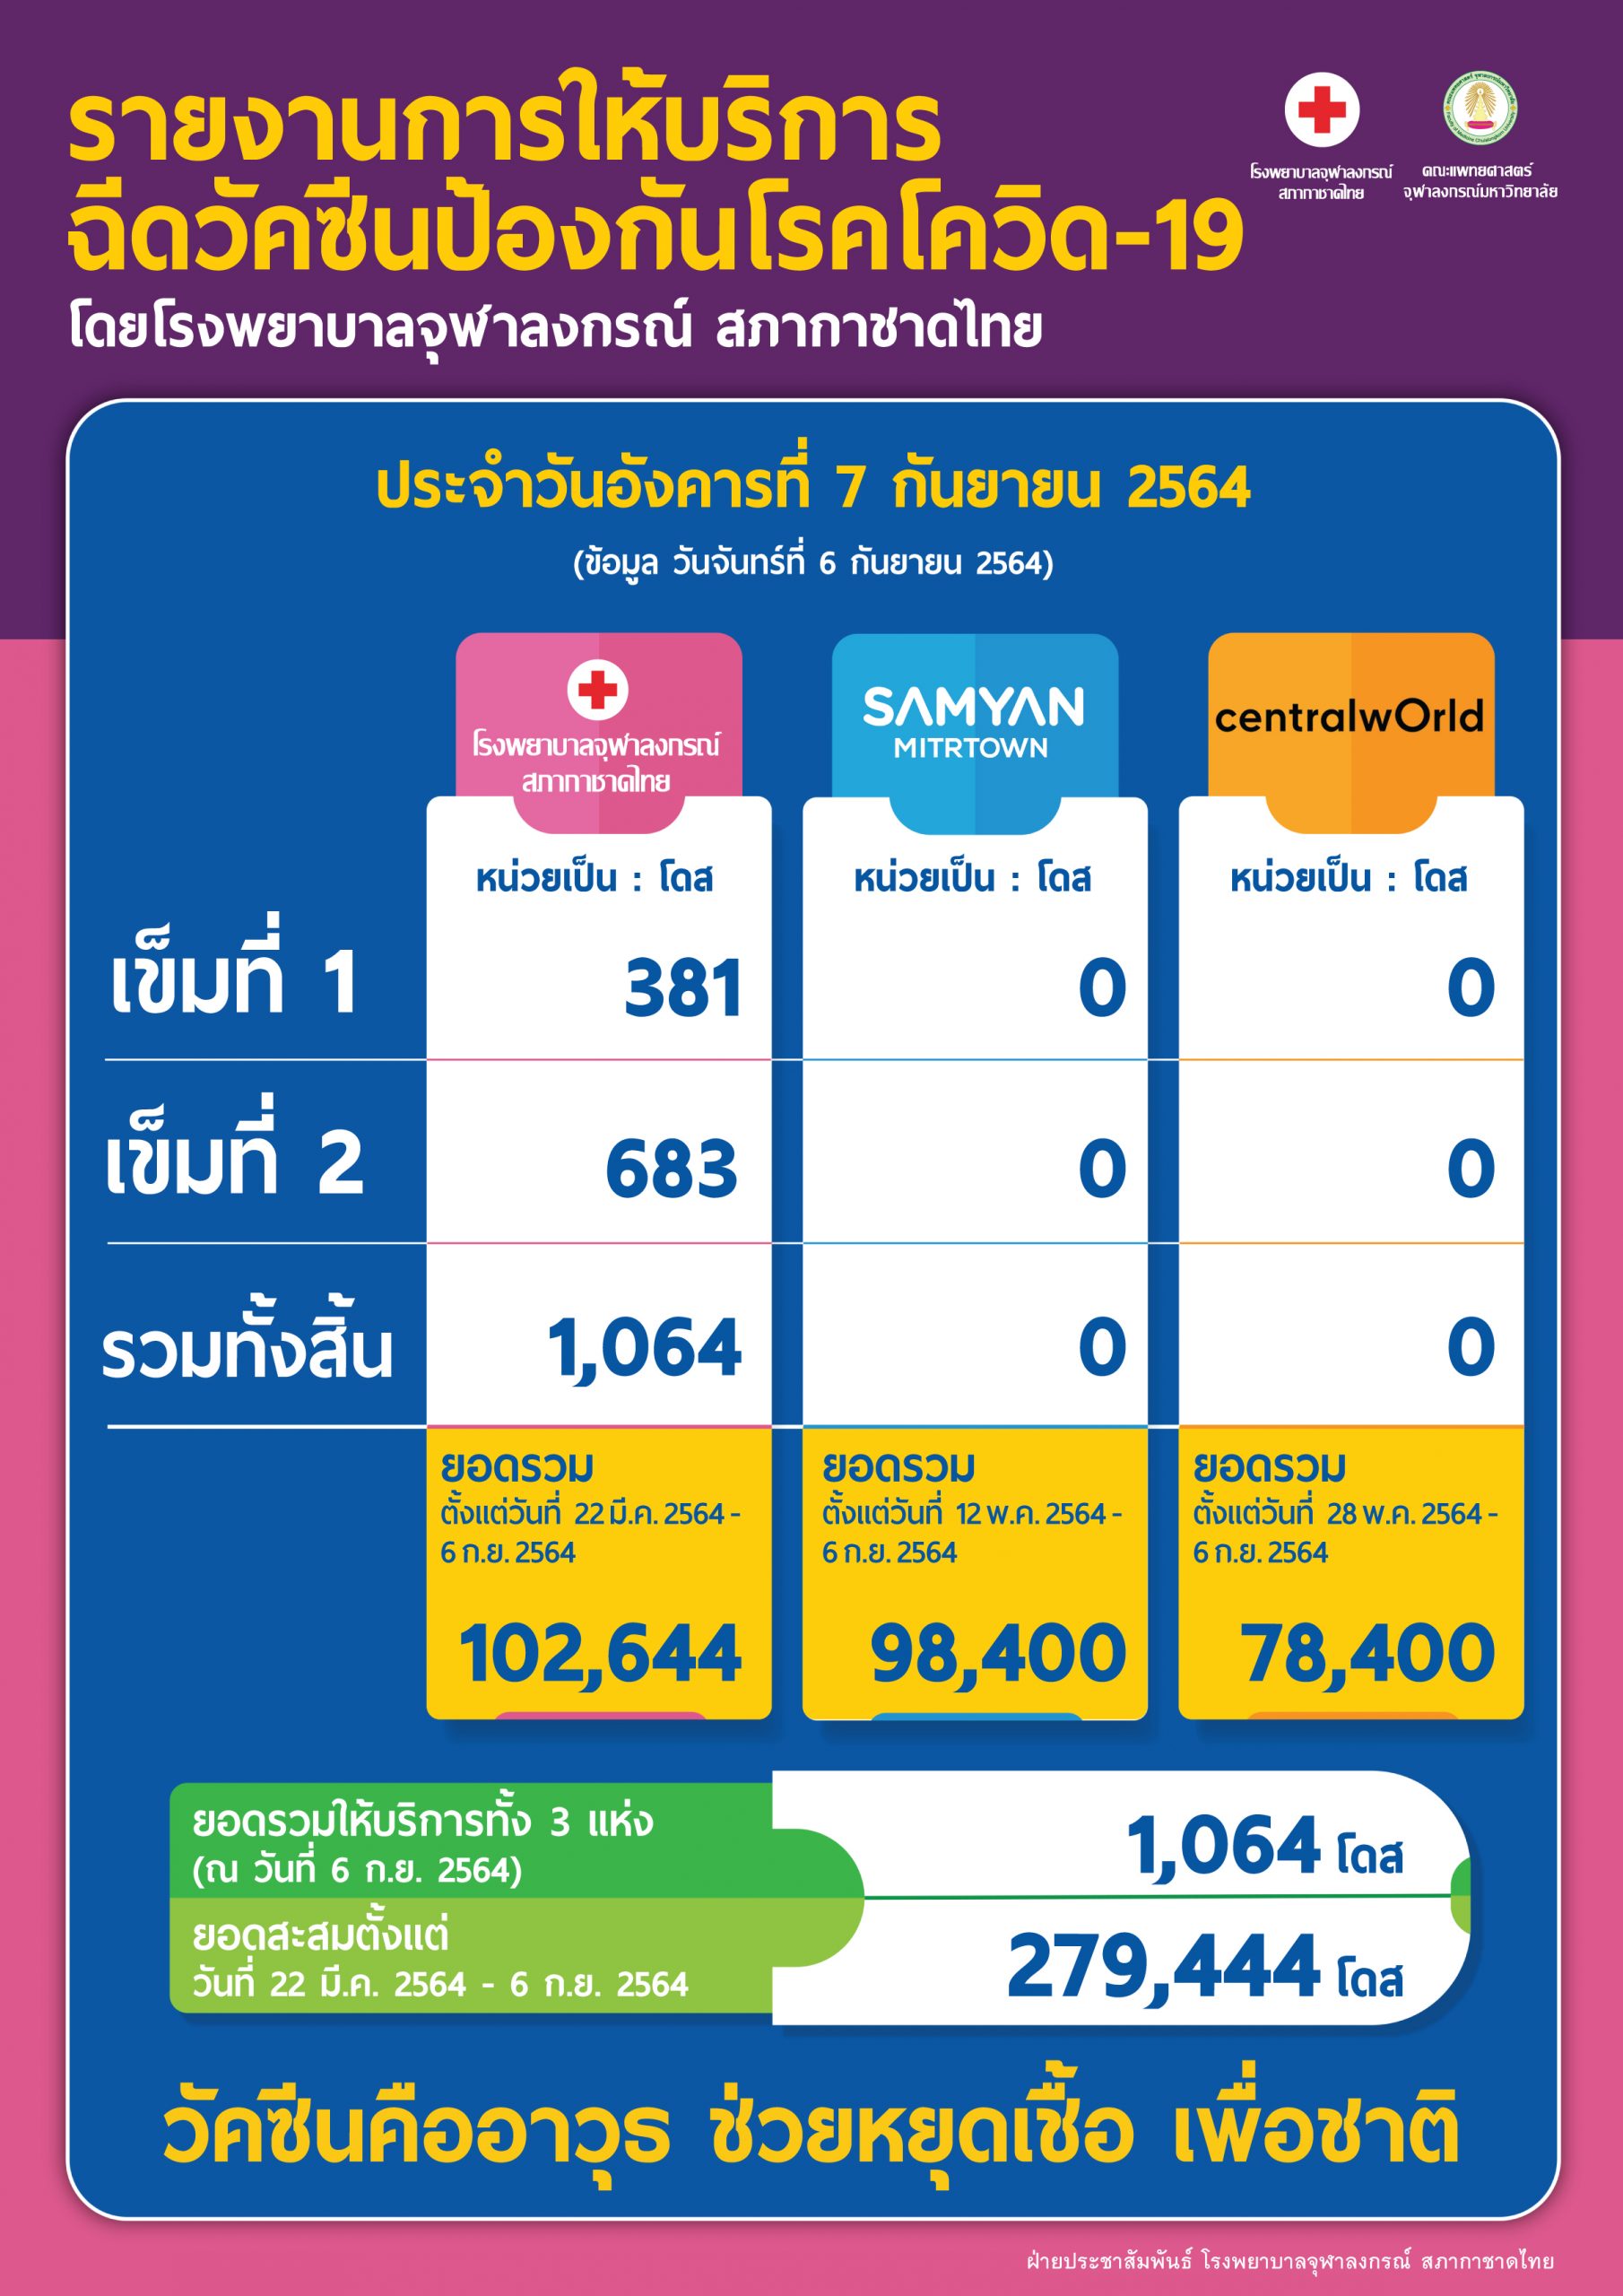 รายงานการให้บริการ ฉีดวัคซีนป้องกันโรคโควิด-19 โดยโรงพยาบาลจุฬาลงกรณ์ สภากาชาดไทย ประจำวันอังคารที่ 7 กันยายน 2564